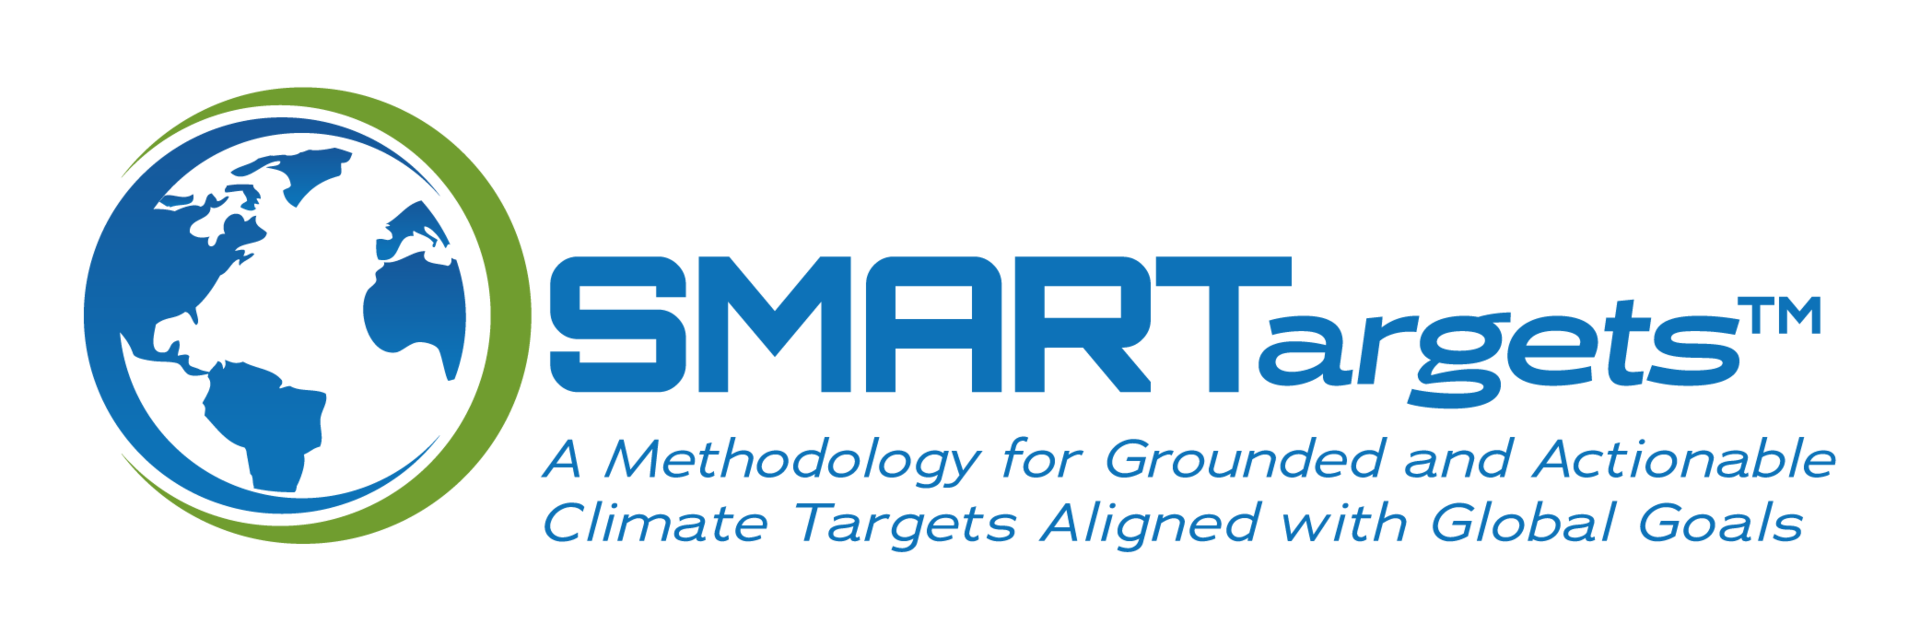 SMARTargets Logo